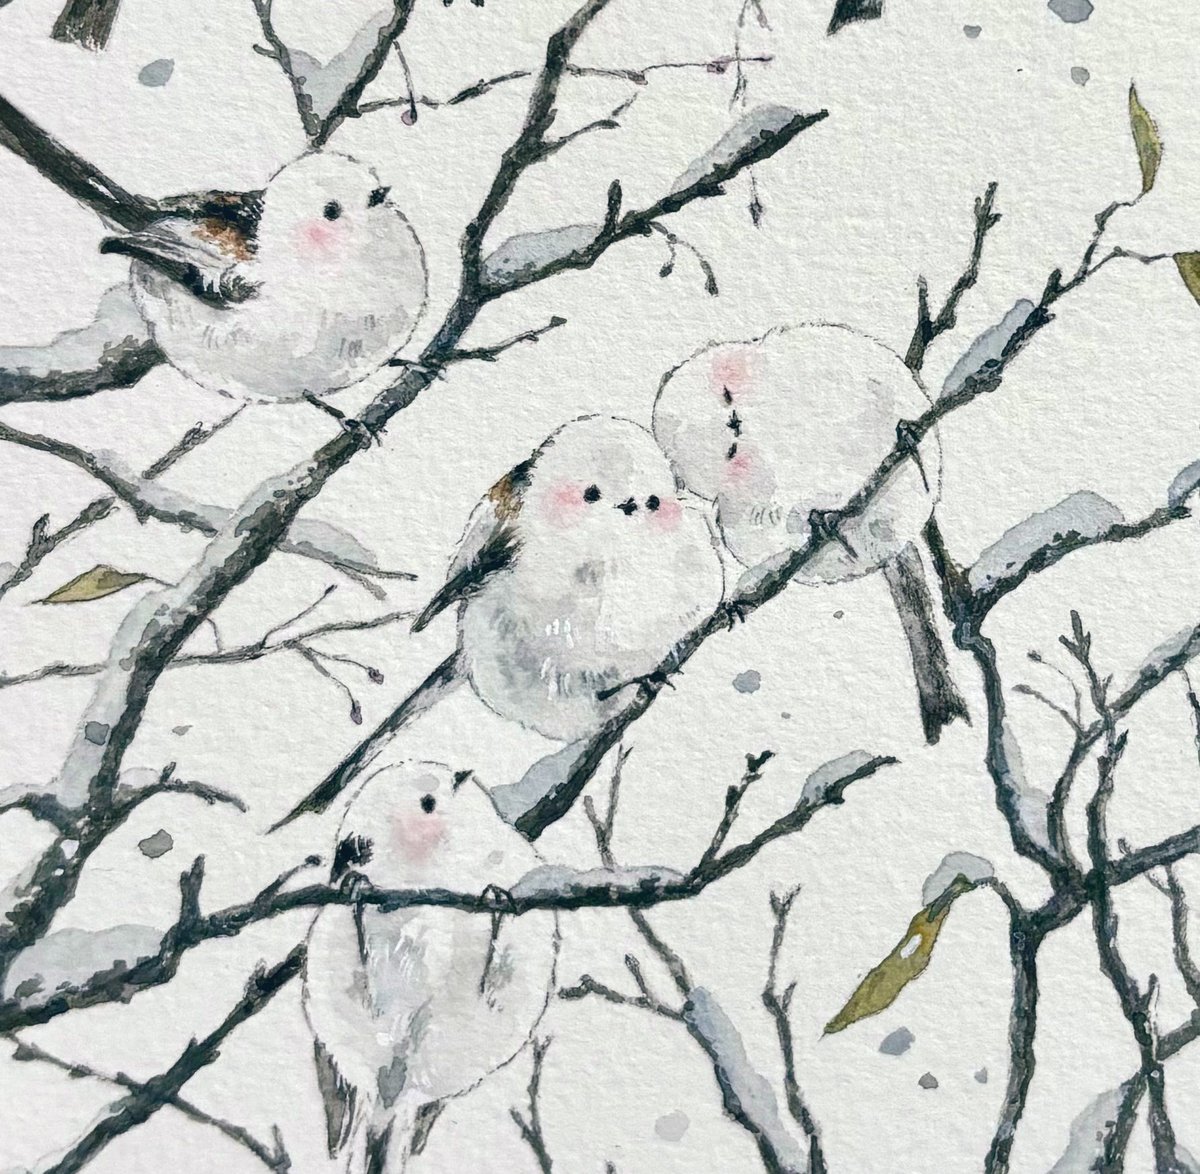 「シマエナガと枯れ木#イラスト 」|natsumi デザフェスC-128のイラスト